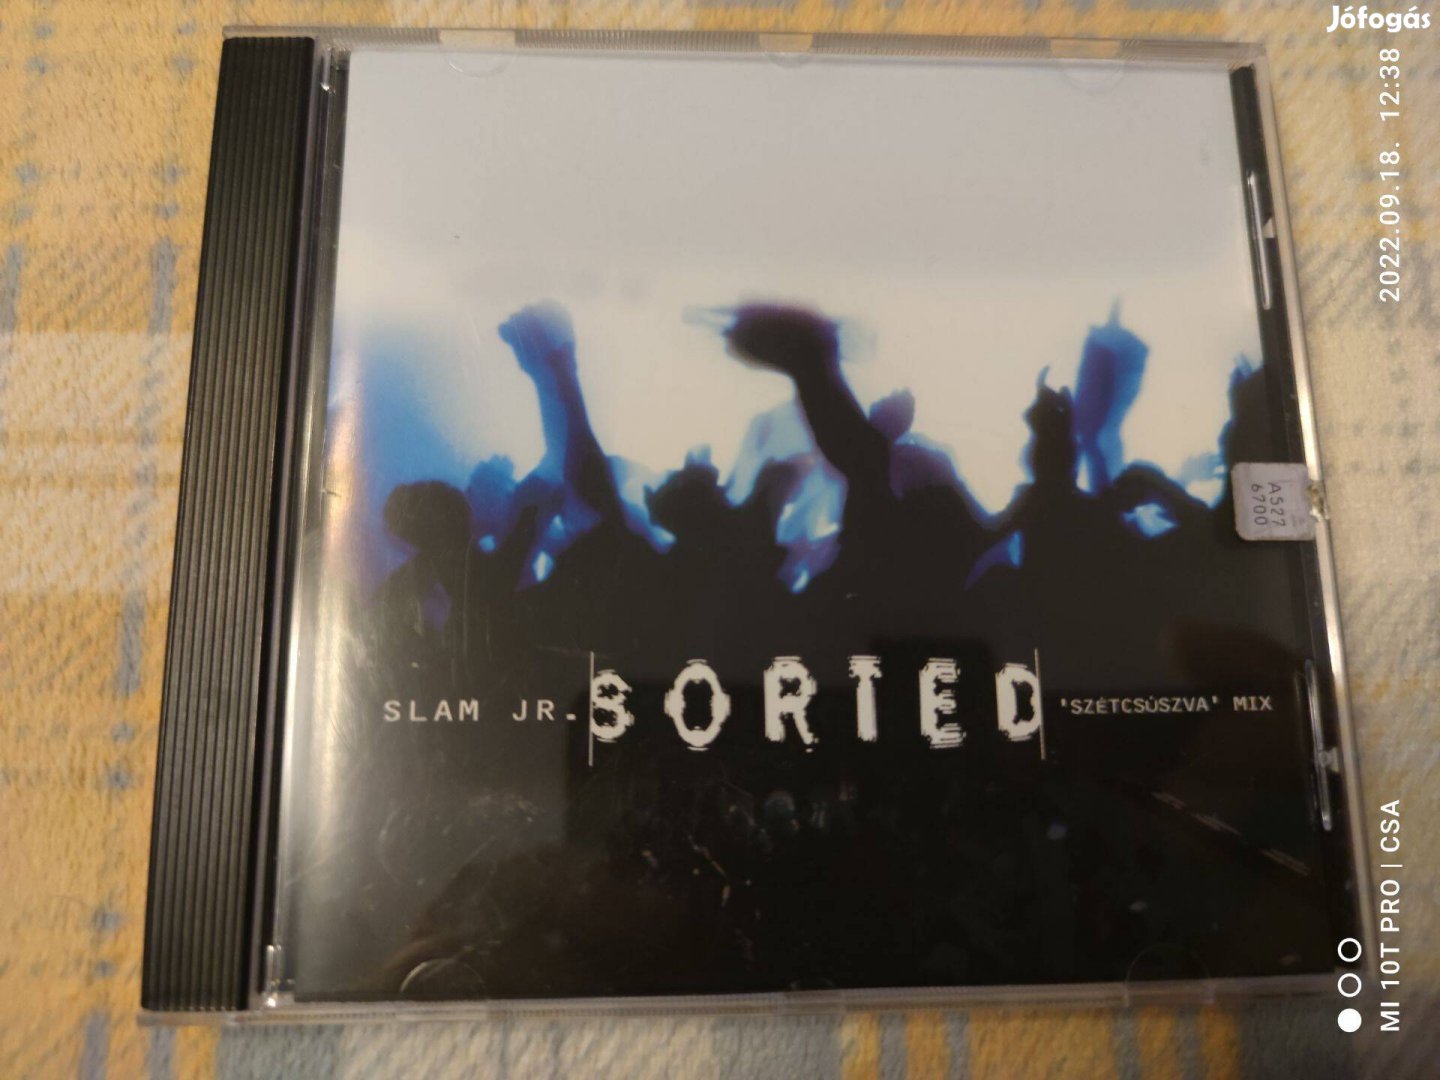 Slam Jr. - Sorted(Szétcsúszva Mix) 2002 CD